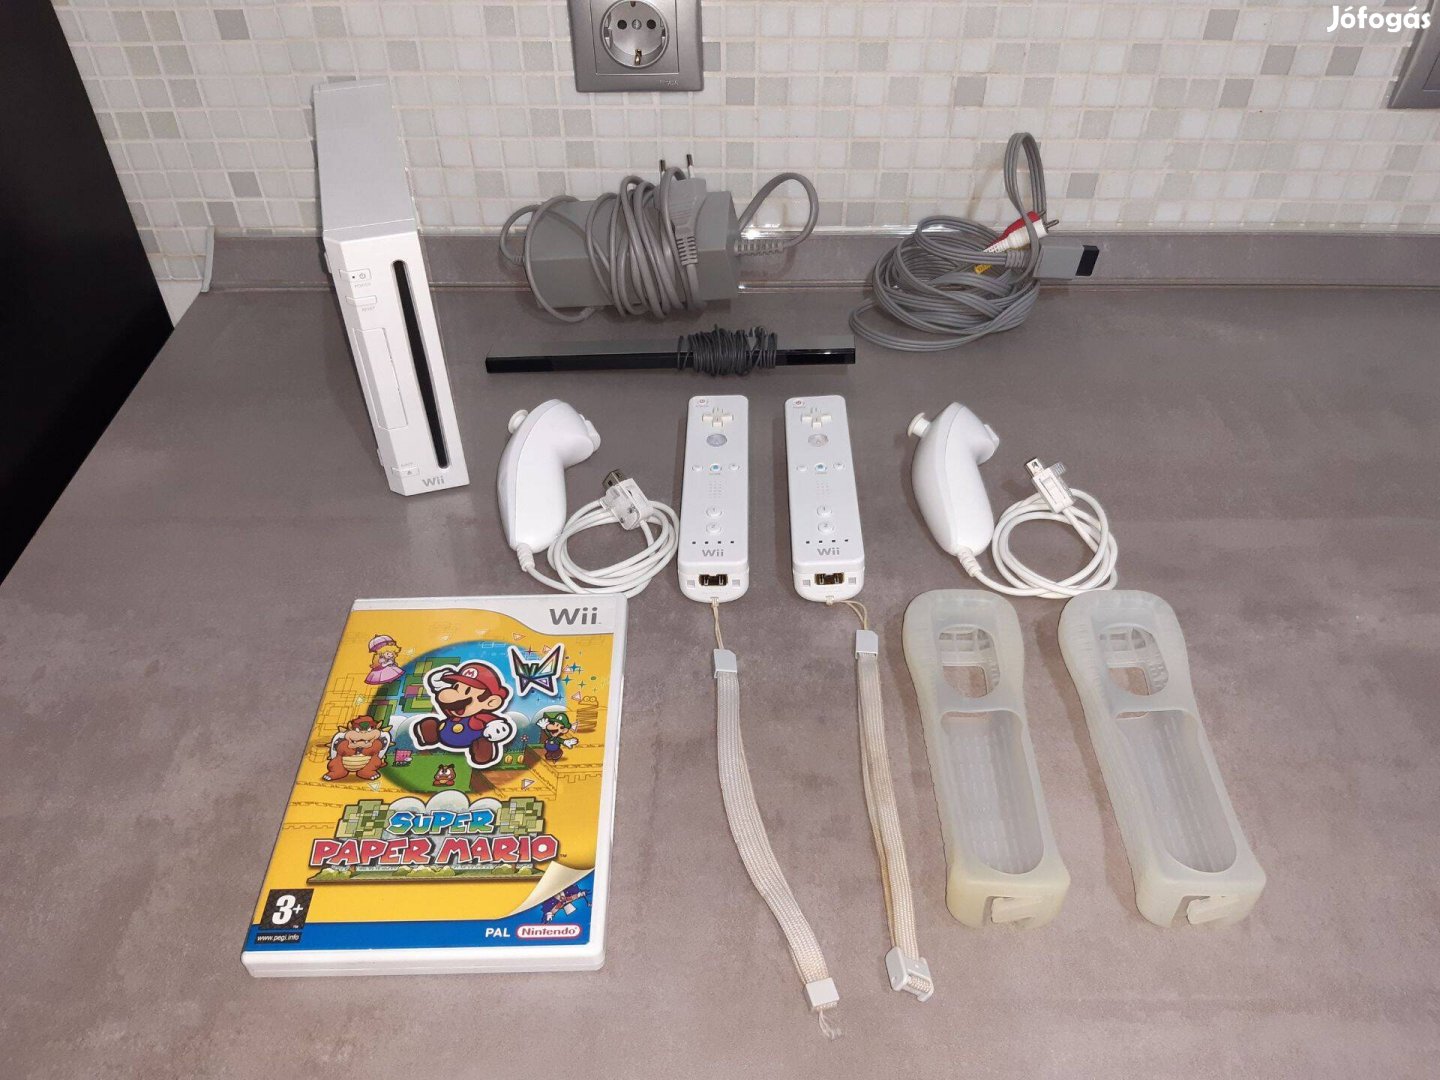 Nintendo Wii konzol (Rvl-001 EUR) + Paper Mario játék Tesztelt, Wii05